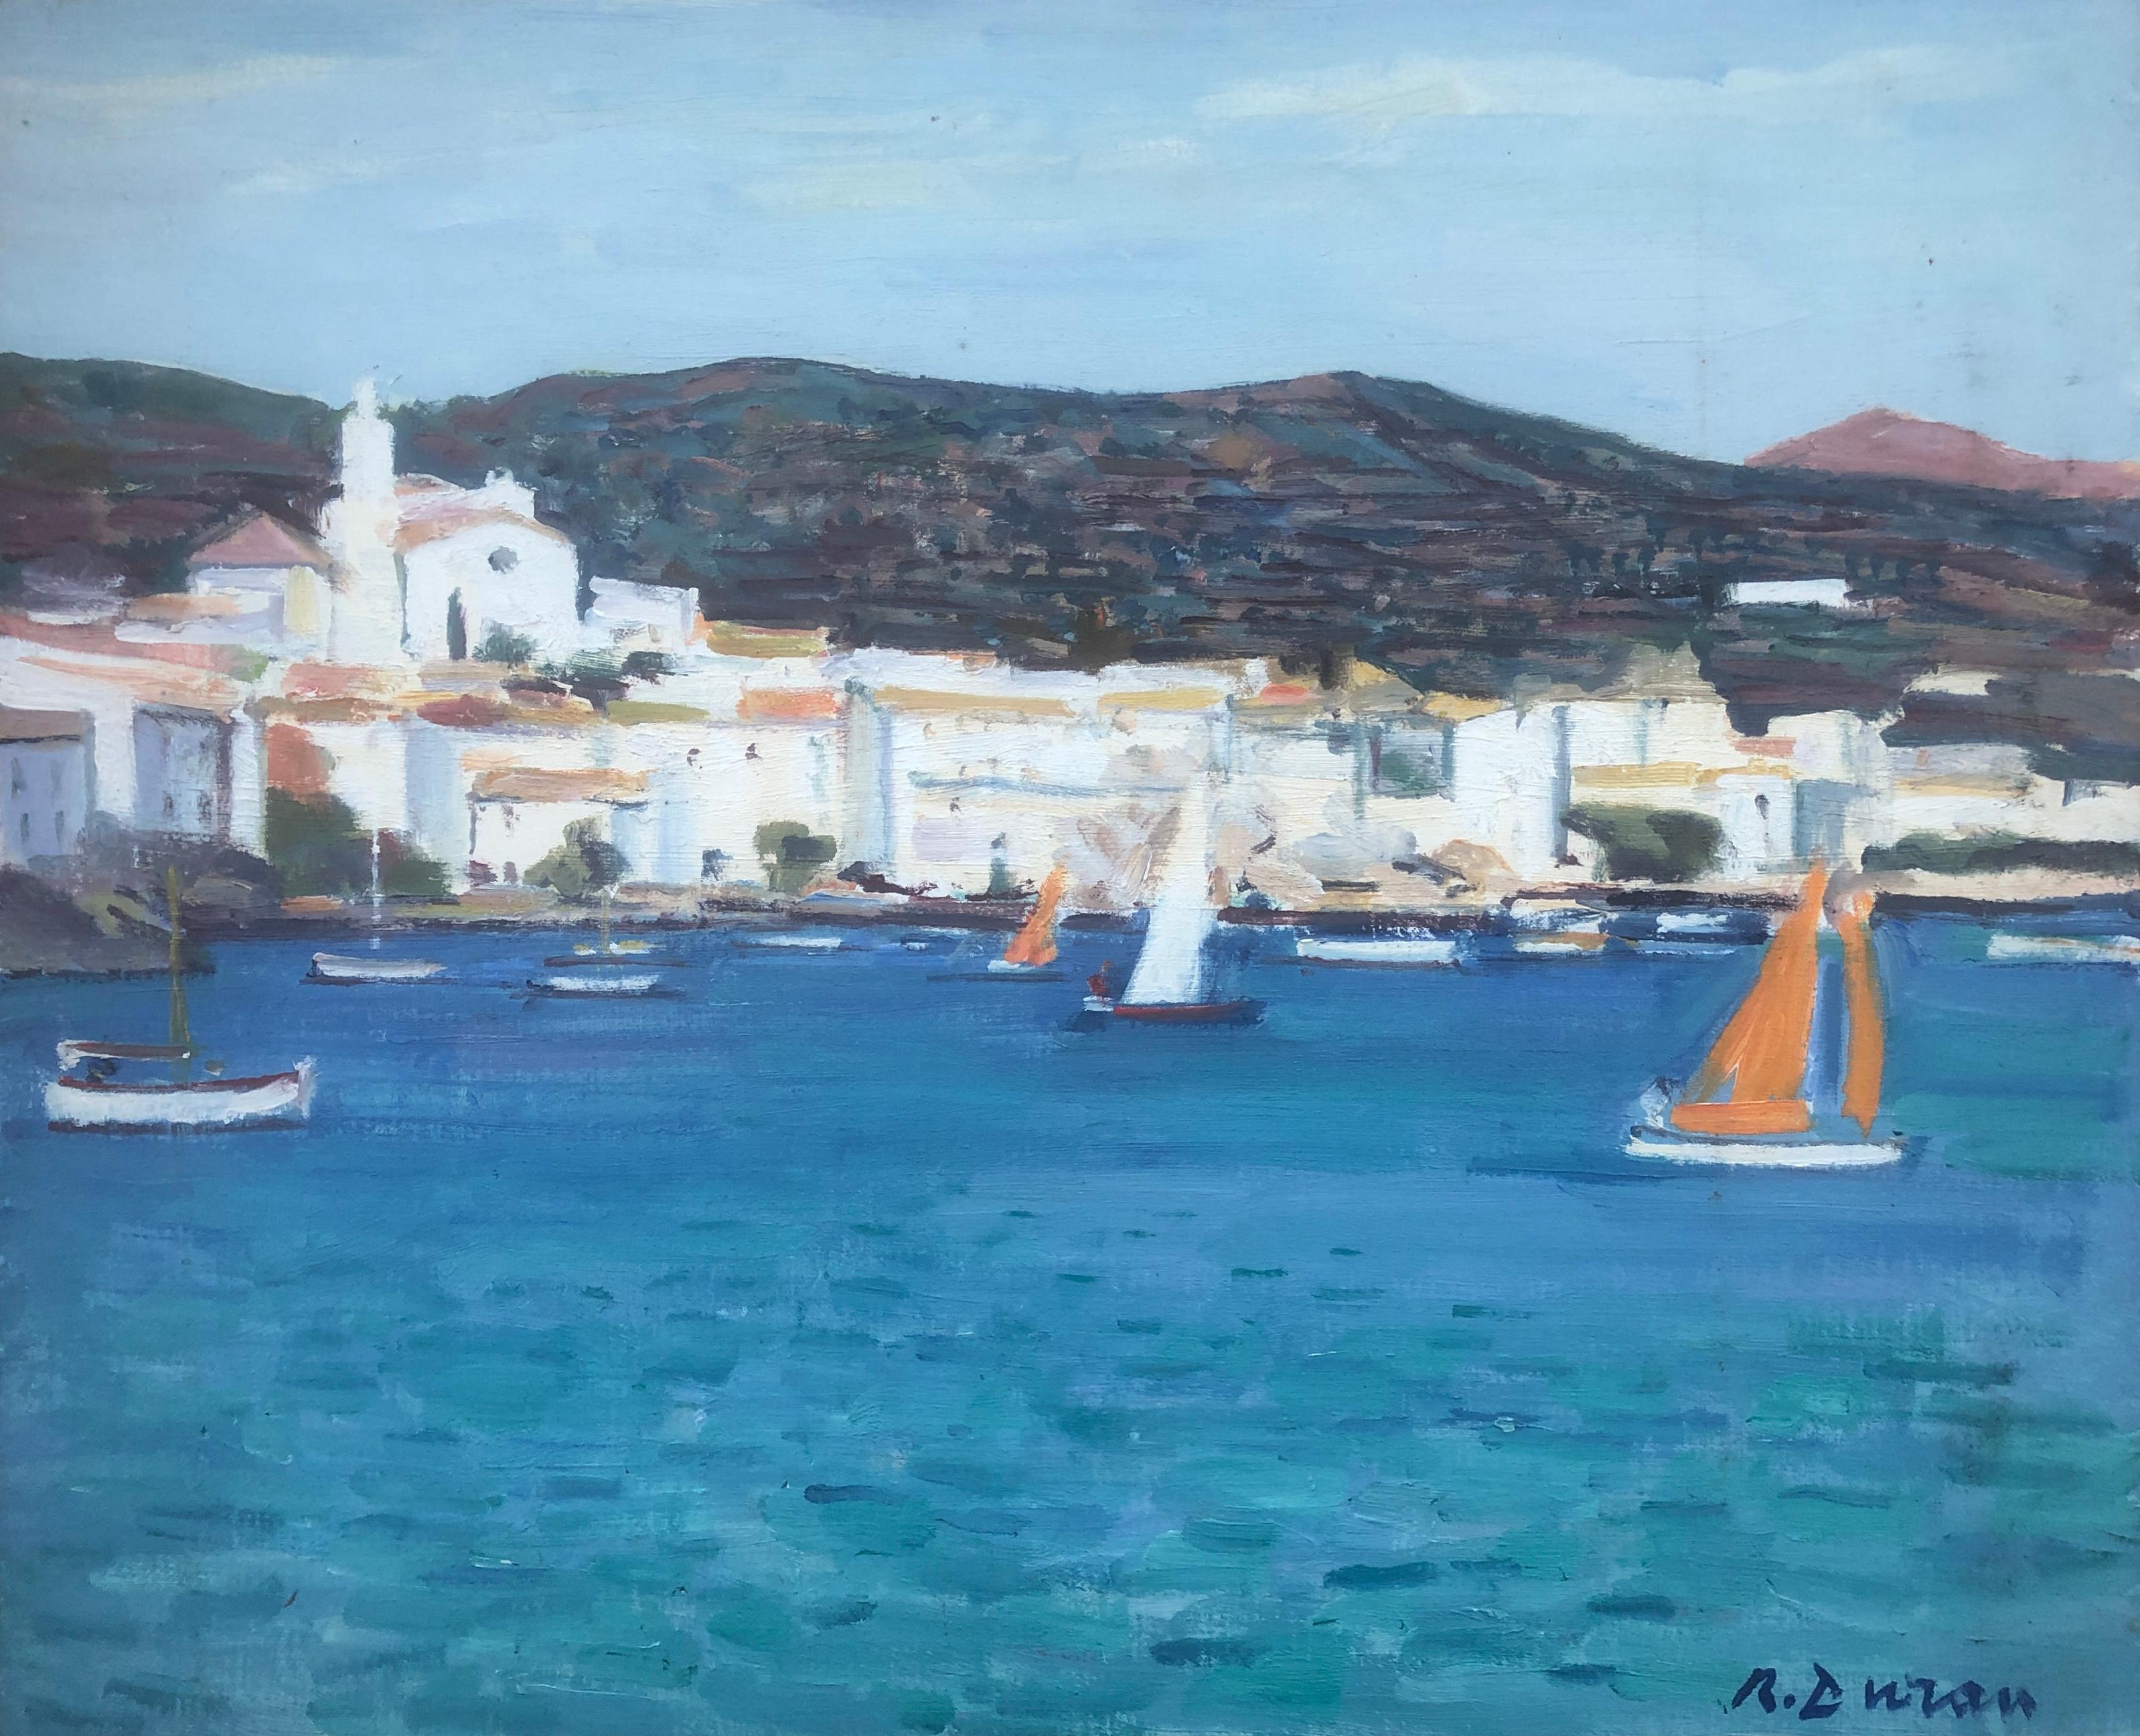 Rafael Duran Benet Landscape Painting - Cadaques Spain Landscape oil painting seascape